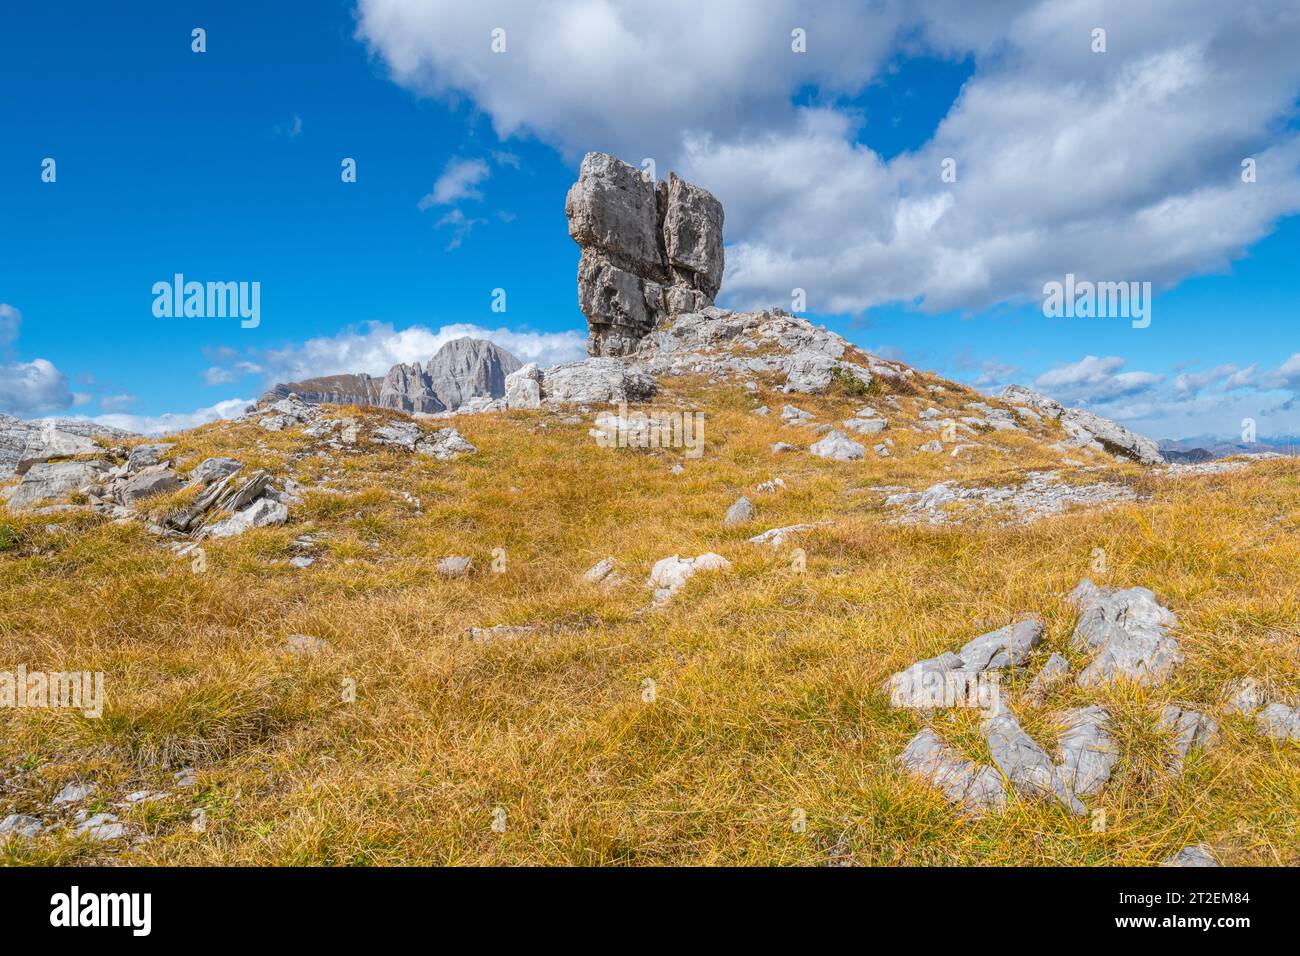 Großer freistehender Kalkstein auf einem kleinen Hügel, der von braunem Gras bedeckt ist, vor blauem Himmel mit Wolken Stockfoto